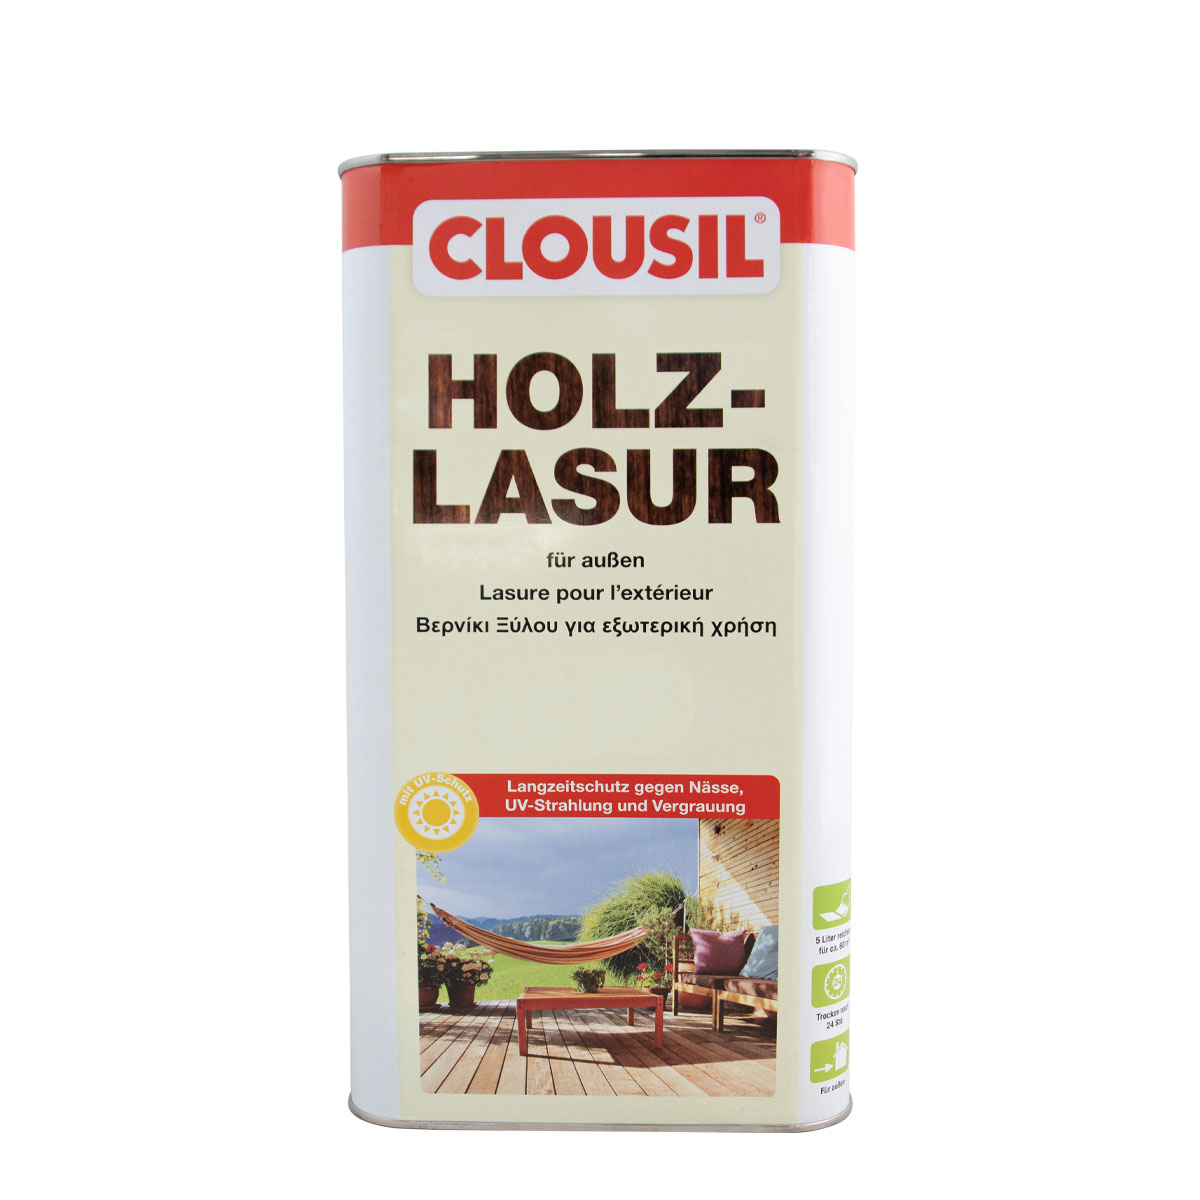 Clousil Holzlasur 5L mahagoni, für außen, schützt vor Witterung